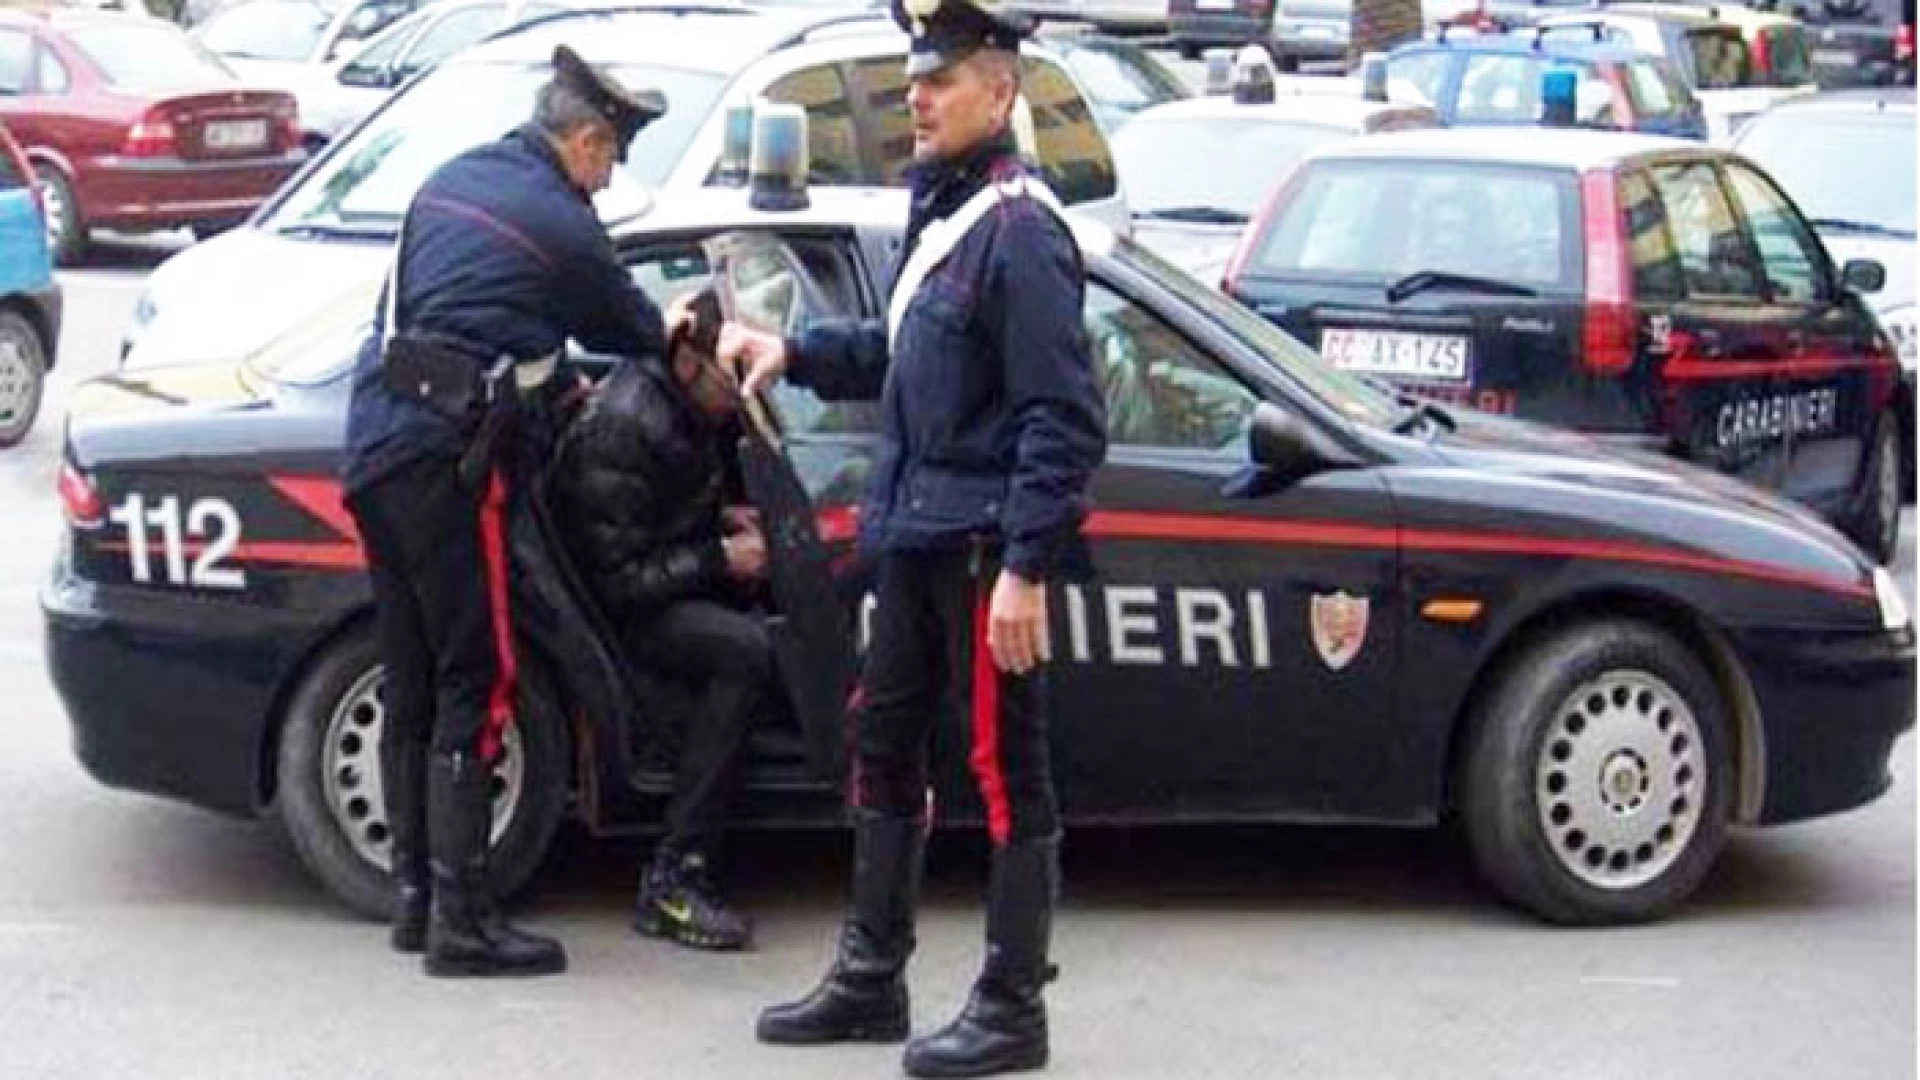 Cerro al Volturno:  “Stalking” ed estorsioni,   due persone arrestate dai Carabinieri. Una 49enne del napoletano estorceva denaro a Cerro ad attività commerciali.